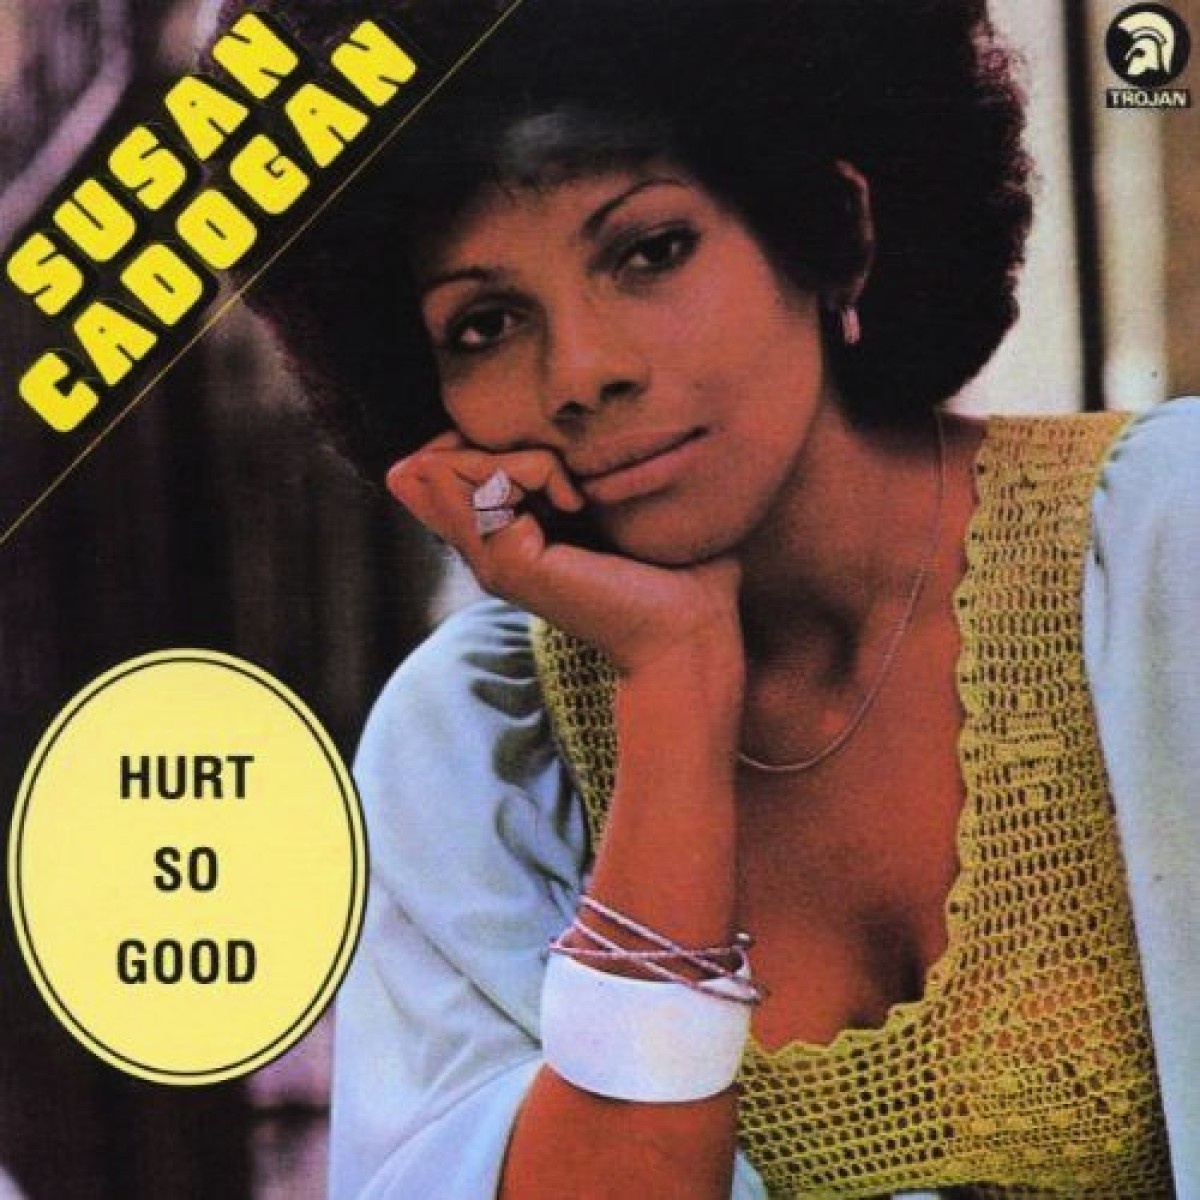 Hurt So Good - Susan Cadogan. (CD)